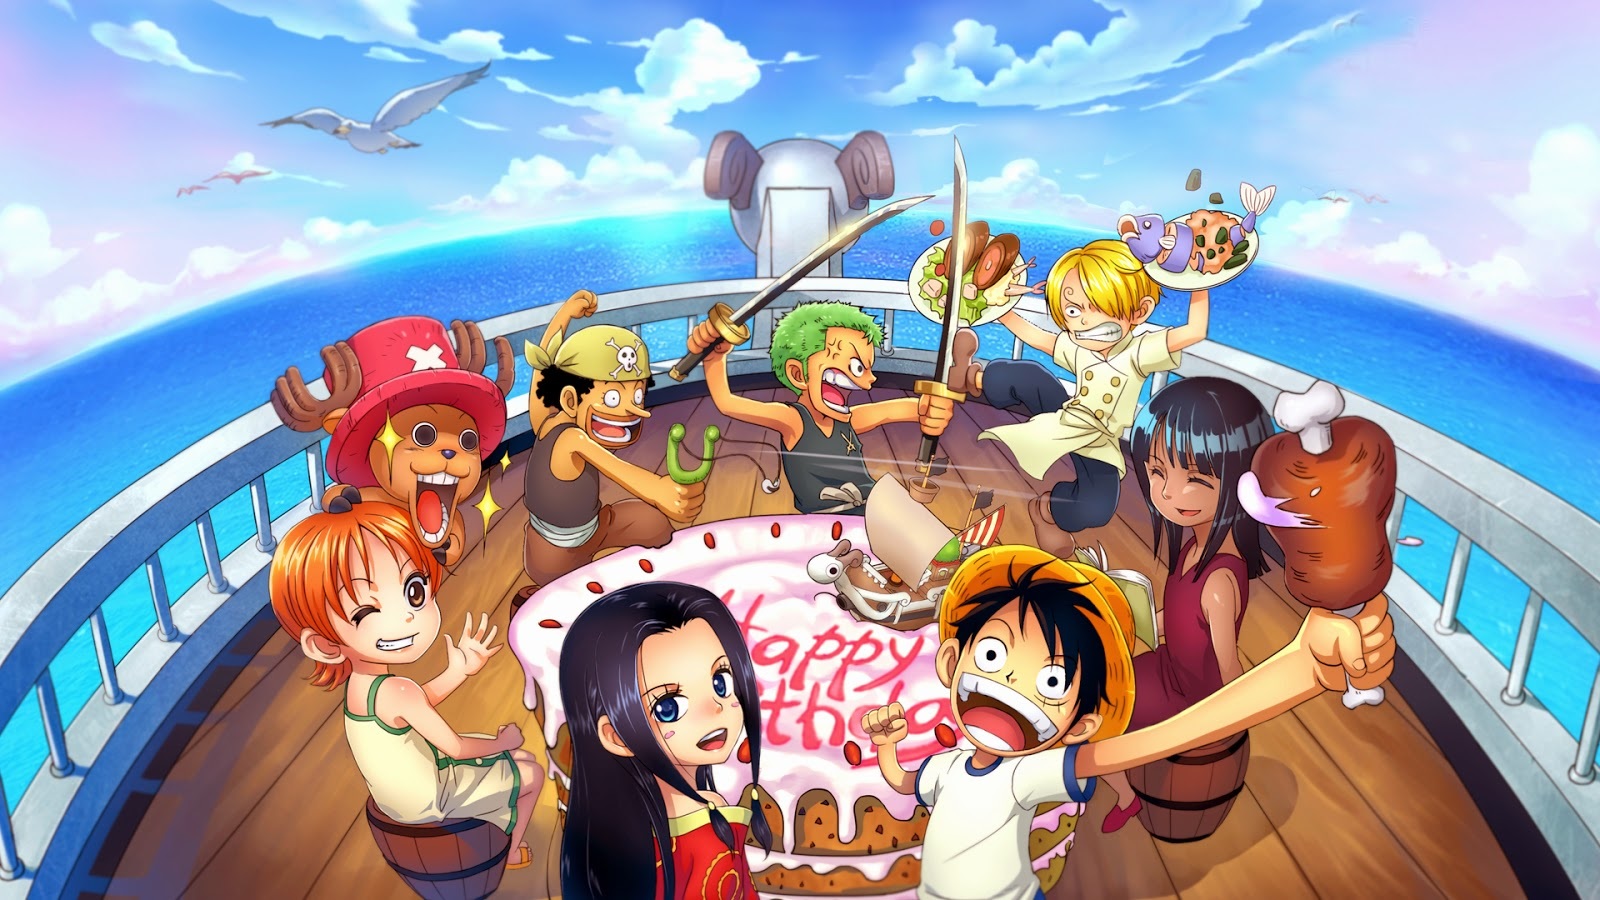 Với 66 ảnh anime One Piece đẹp, bạn sẽ được tận hưởng một bức tranh đầy sắc màu, bắt đầu từ những phong cảnh tuyệt đẹp, những tình huống đầy kịch tính cho đến những nhân vật đáng yêu. Bộ sưu tập này chắc chắn sẽ làm hài lòng người xem khó tính nhất.